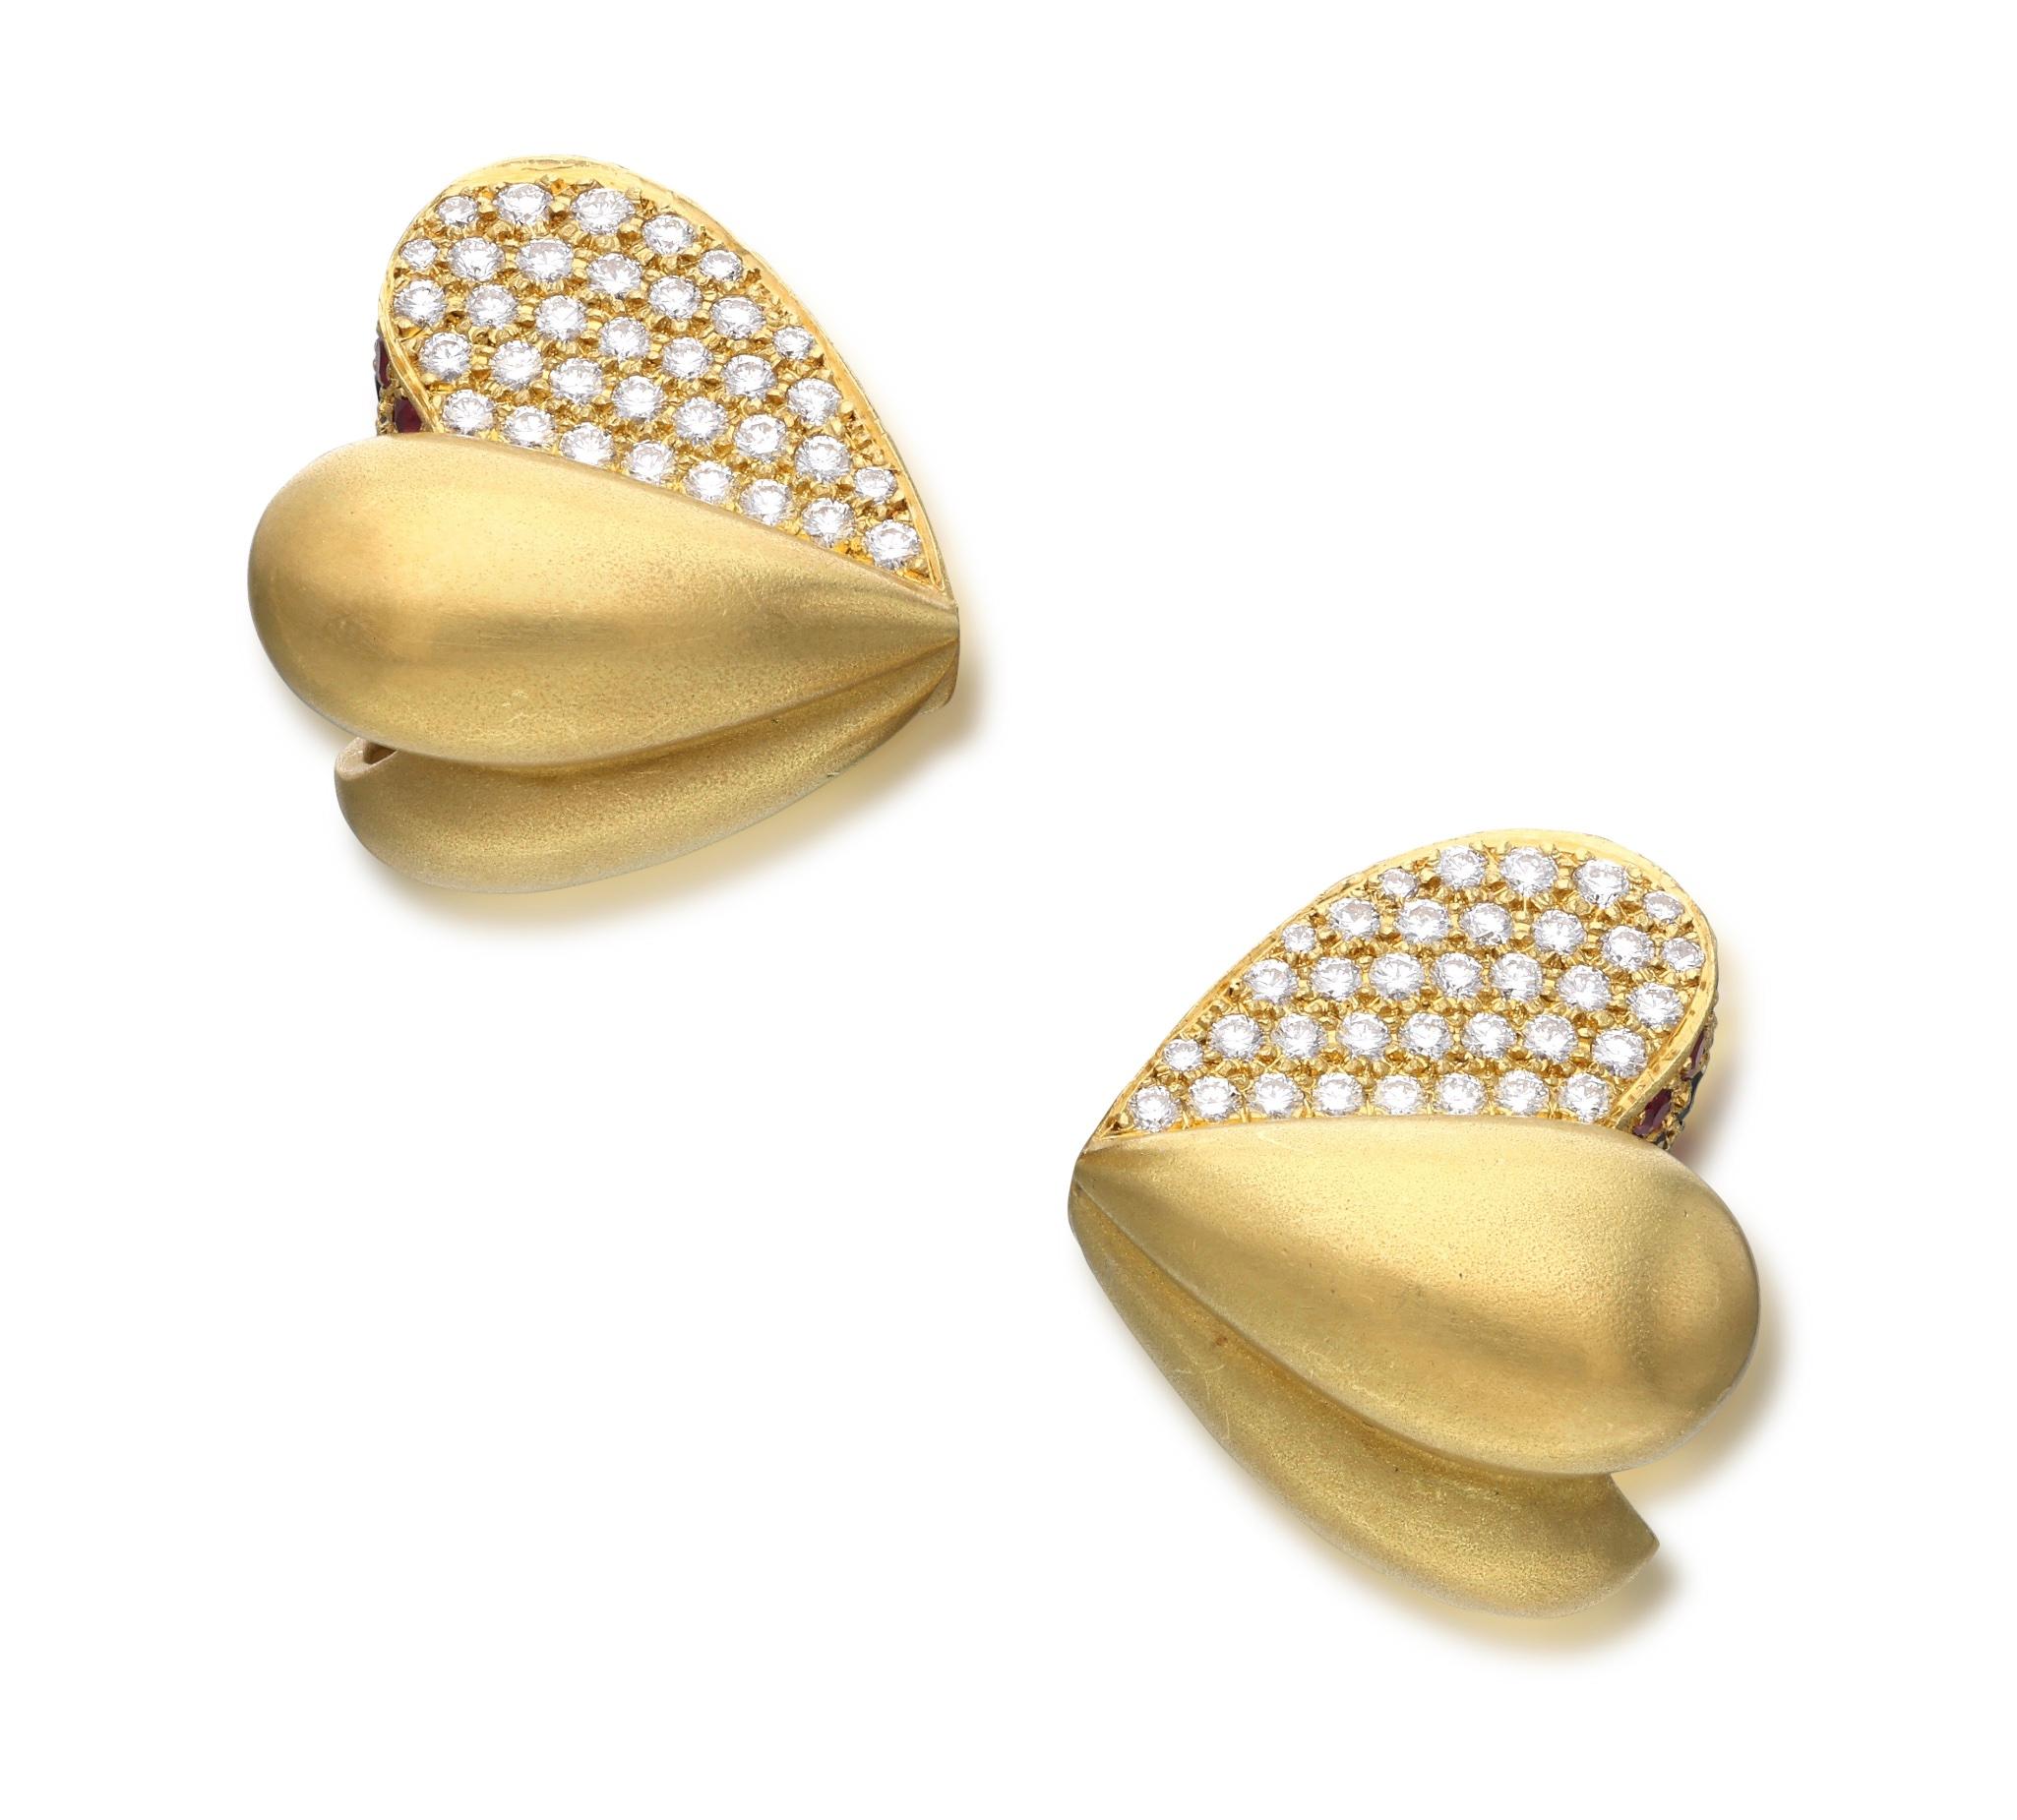 Ces magnifiques clips d'oreilles sont conçus comme un cœur, sertis de diamants ronds, de rubis et de saphirs.

- Les diamants pèsent au total environ 1,40 carat.
- Les rubis et les saphirs pèsent au total environ 2,50 carats.
- Or jaune 18 carats
-